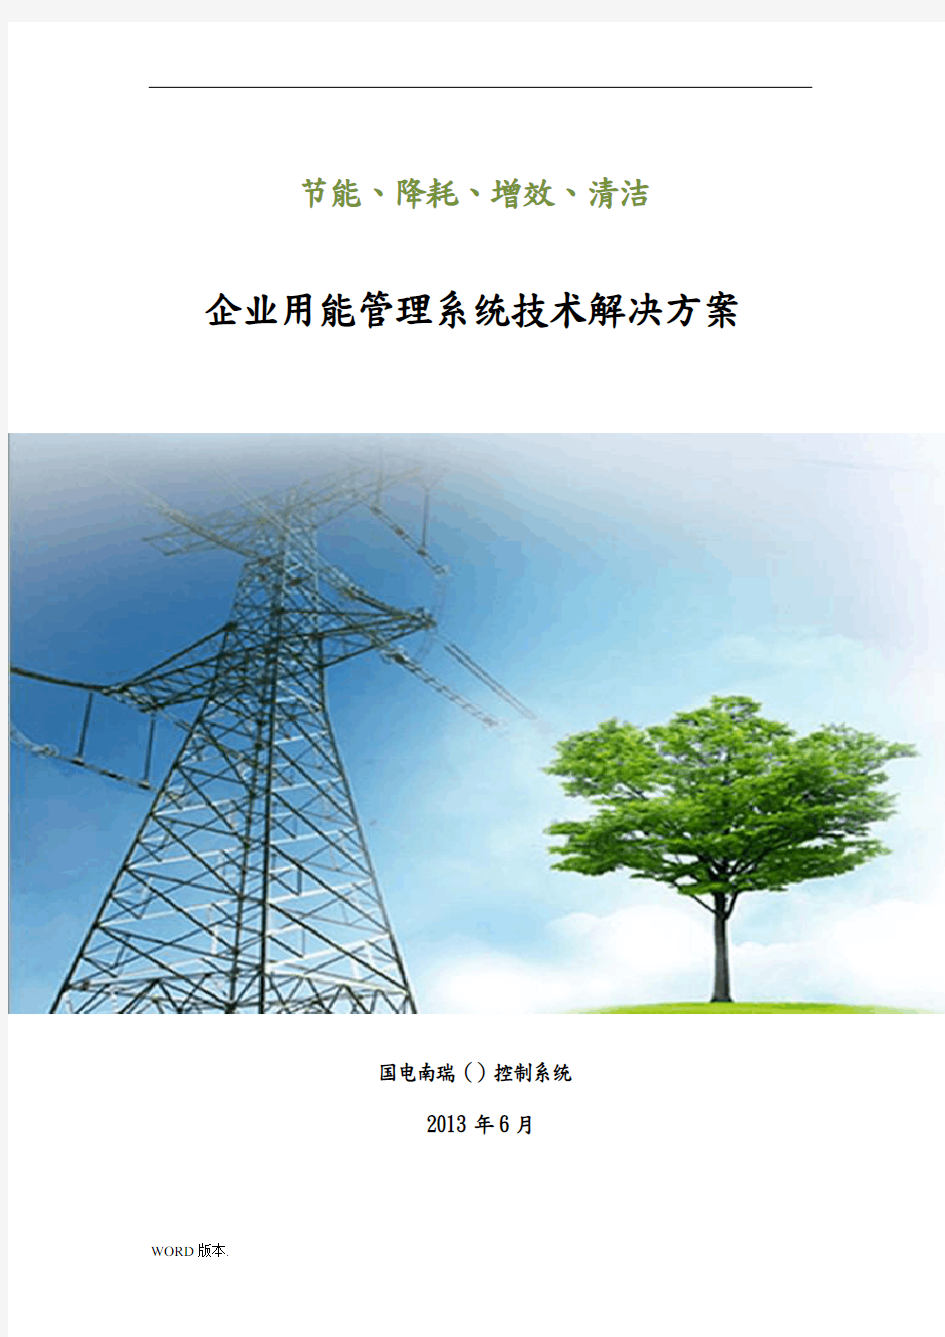 国电南瑞(北京)-企业用能管理系统项目解决方案-2013